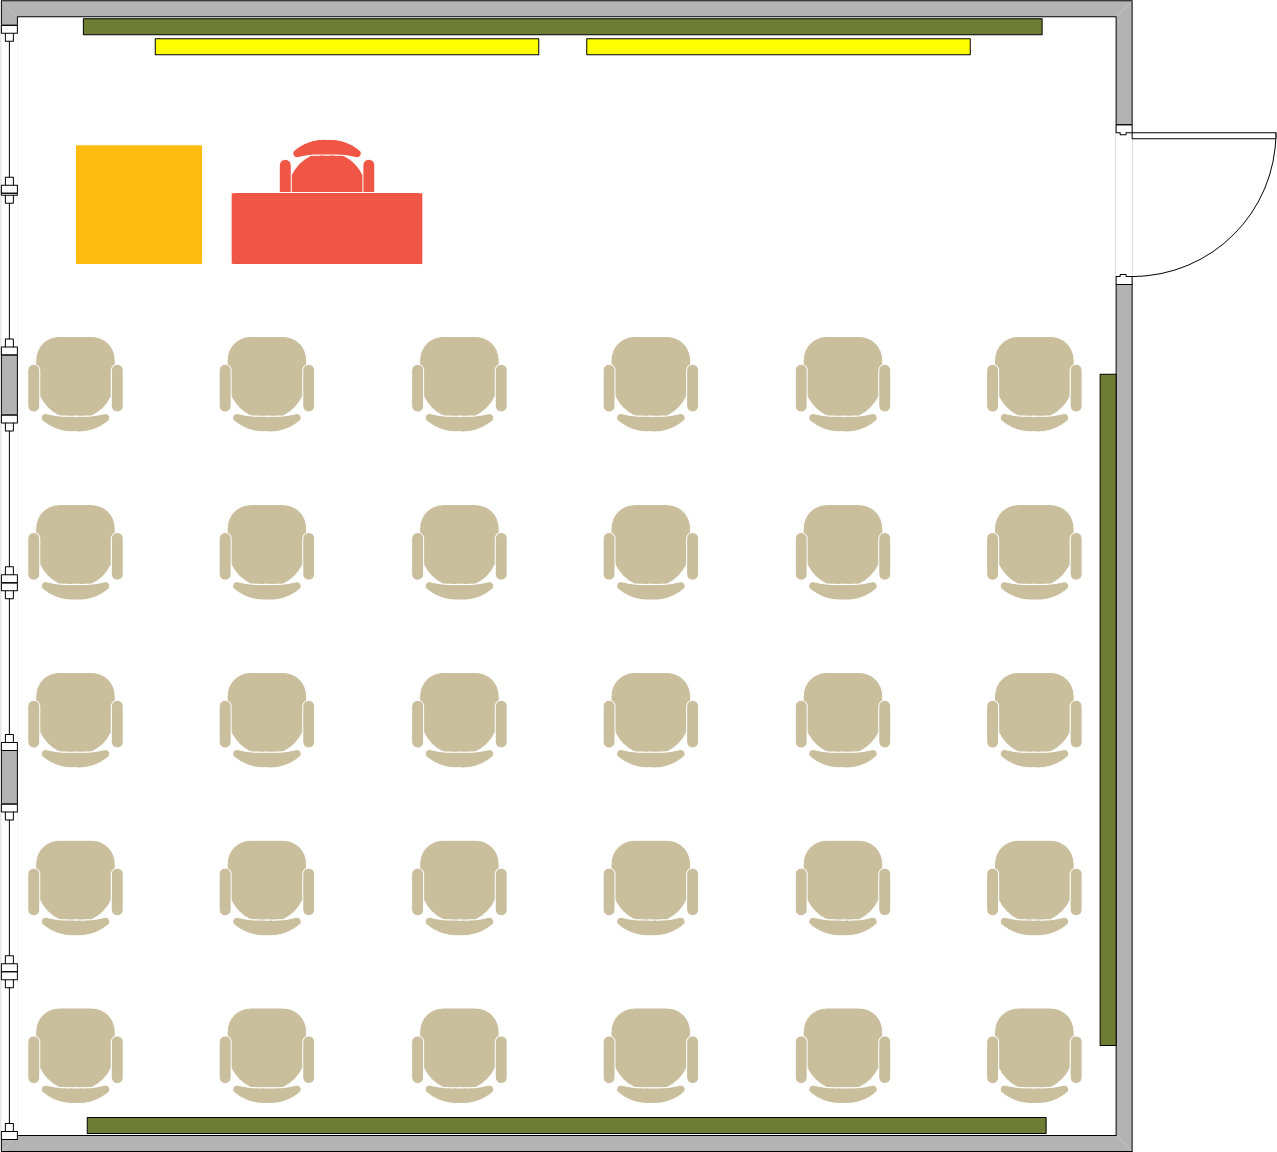 Girvetz Hall - 2112 Seating Chart